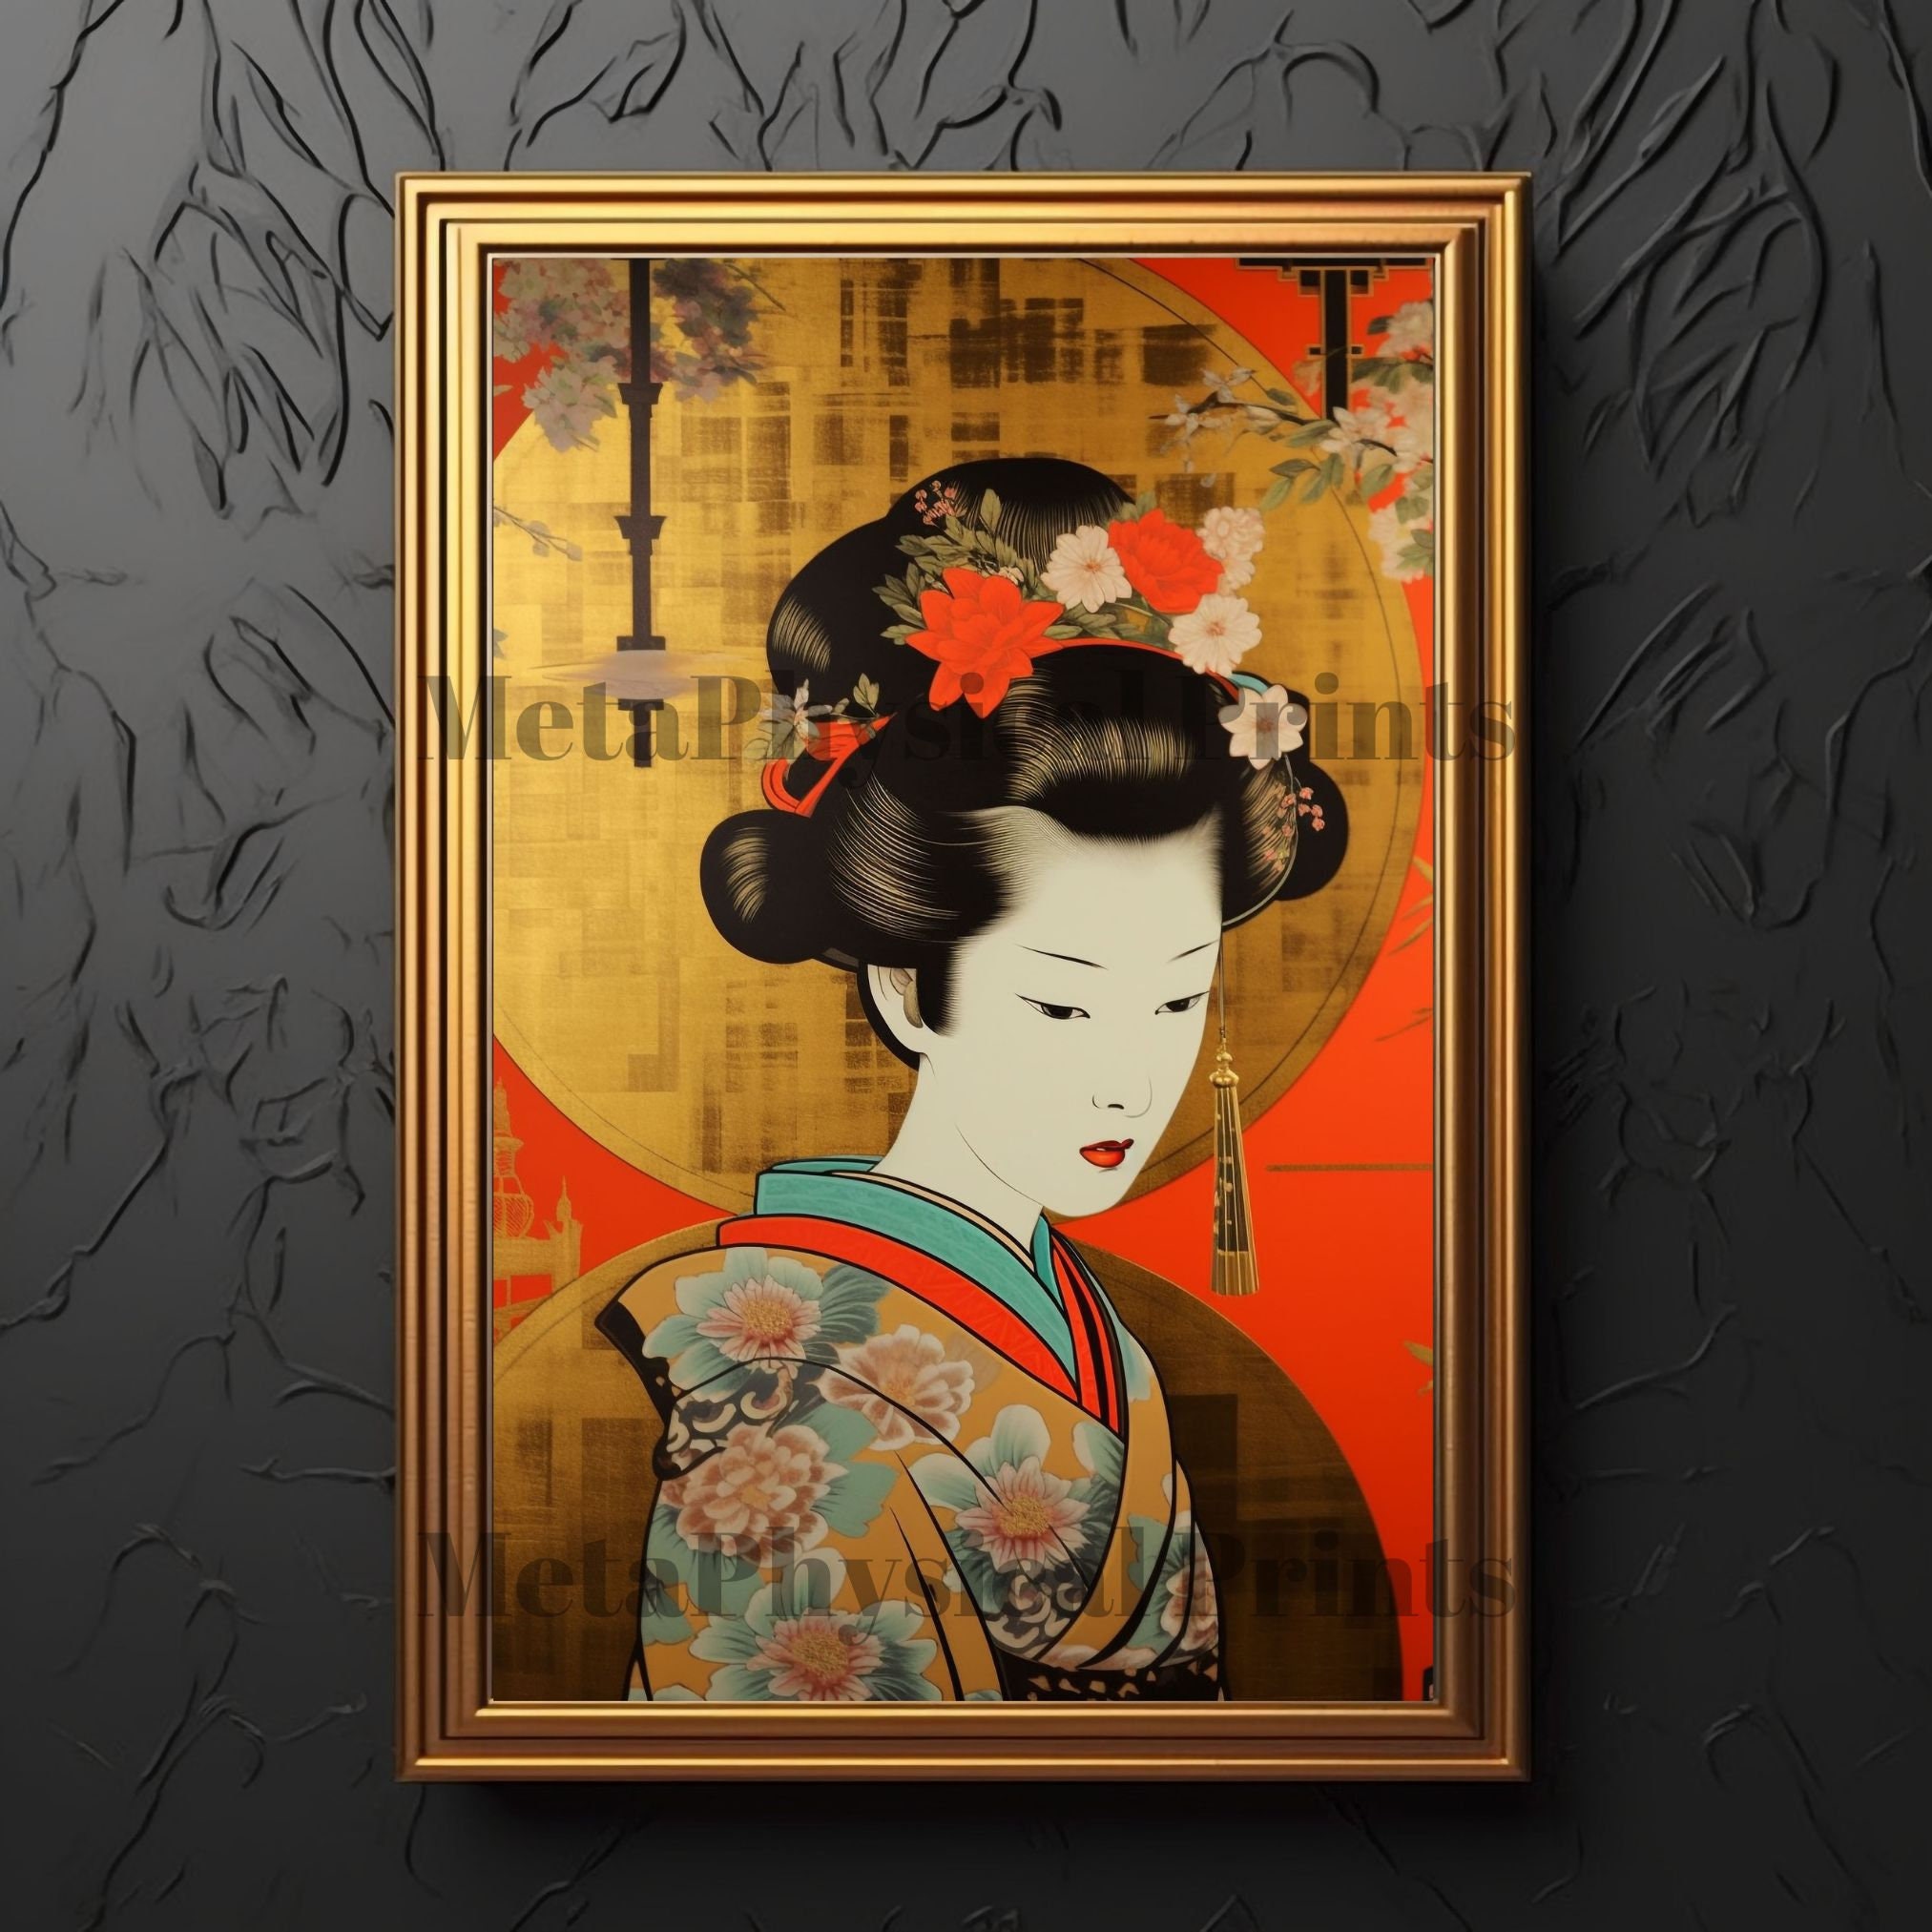 Arjazia Tableau Japonais Geisha Portrait - Décoration Murale